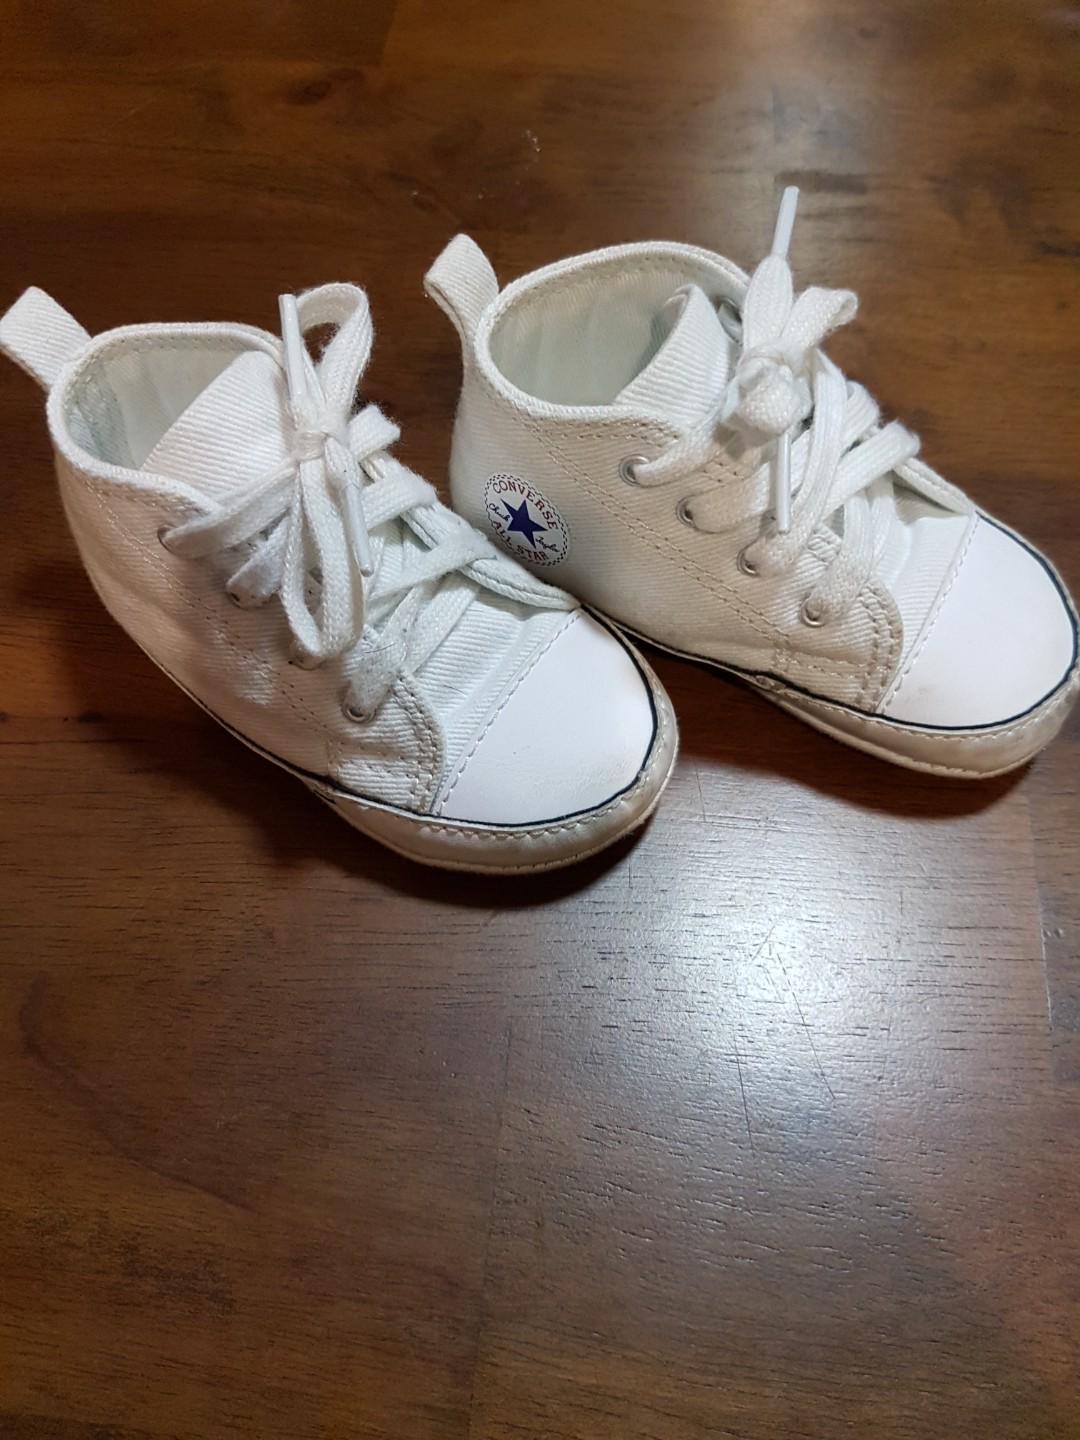 9 12 months converse shoes